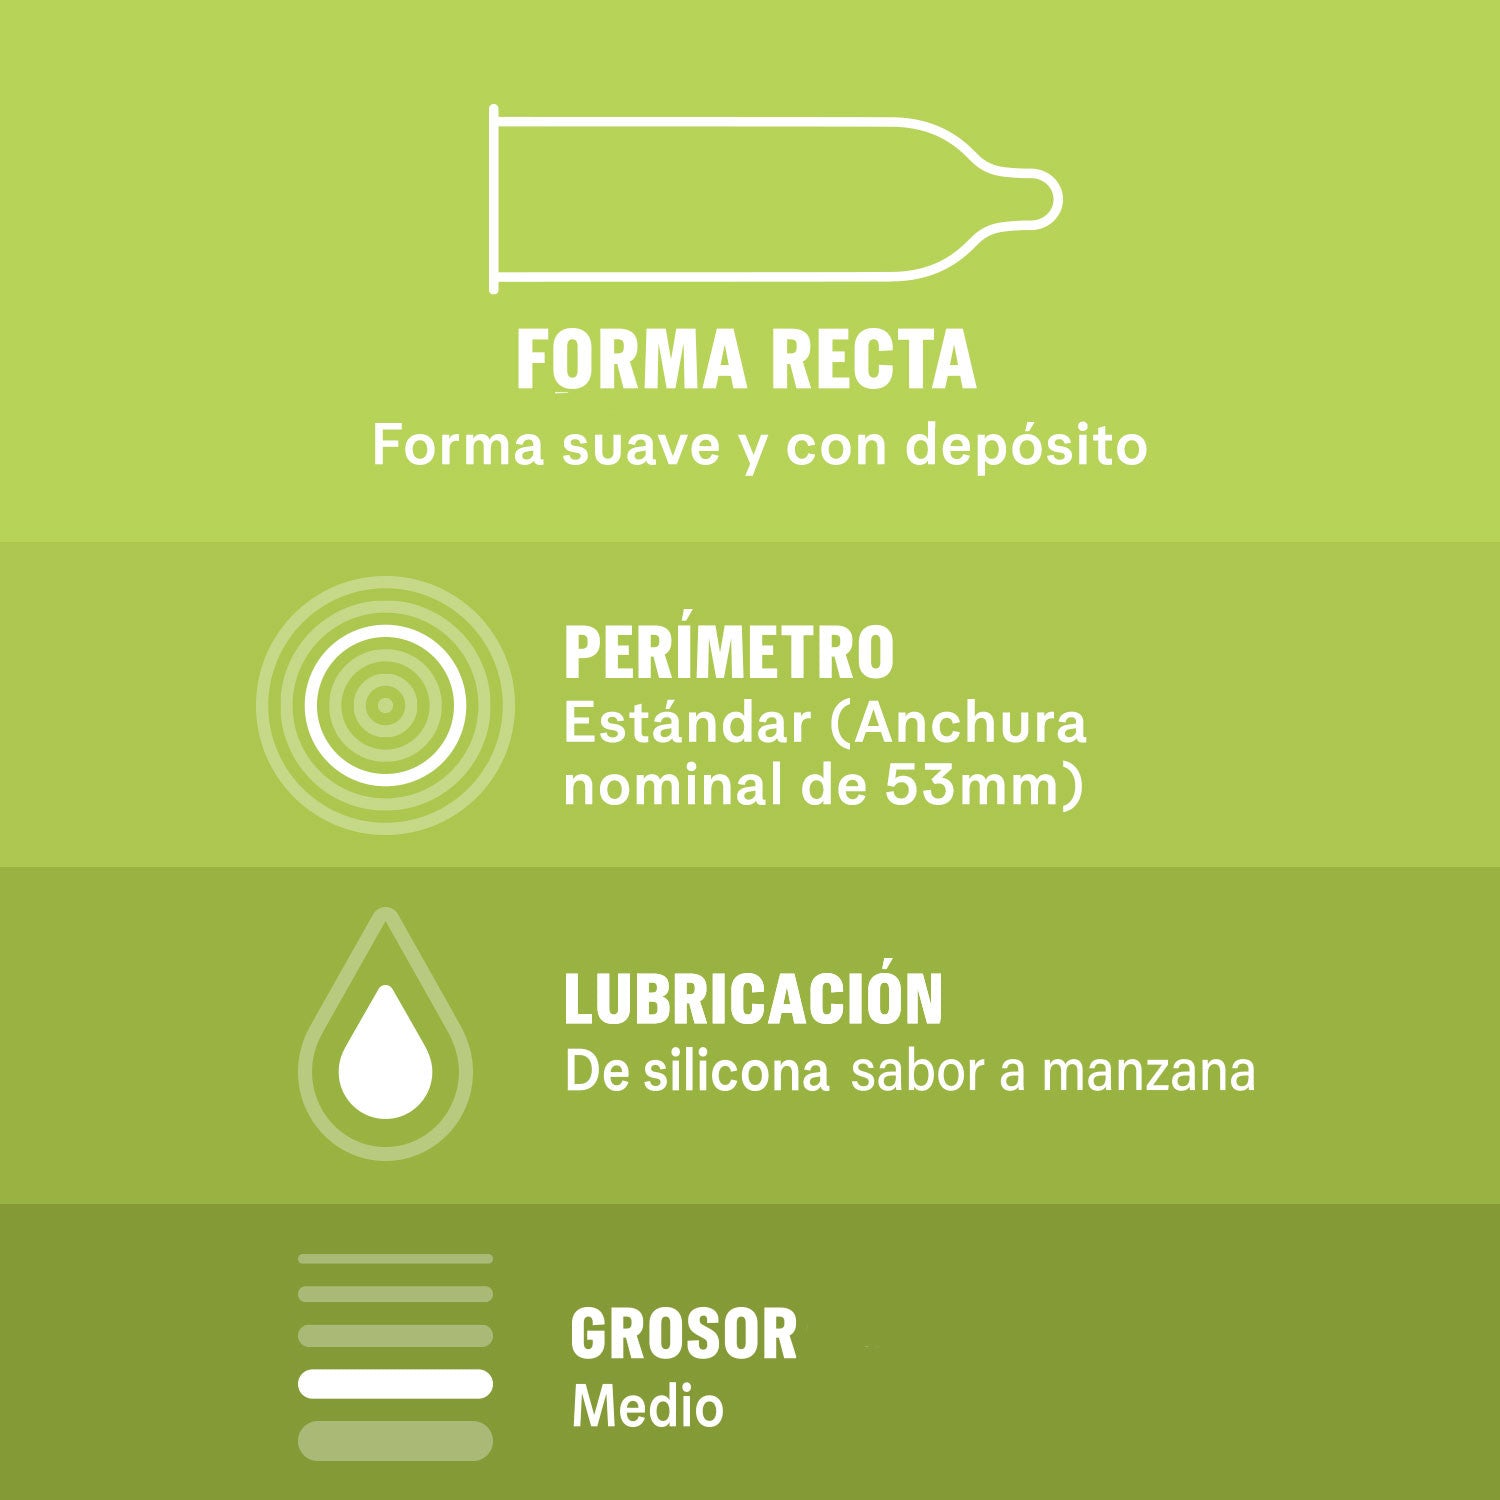 Durex Preservativos Saboreame con Sabores Afrutados - Fresa, Plátano, Naranja y Manzana 12 unidades